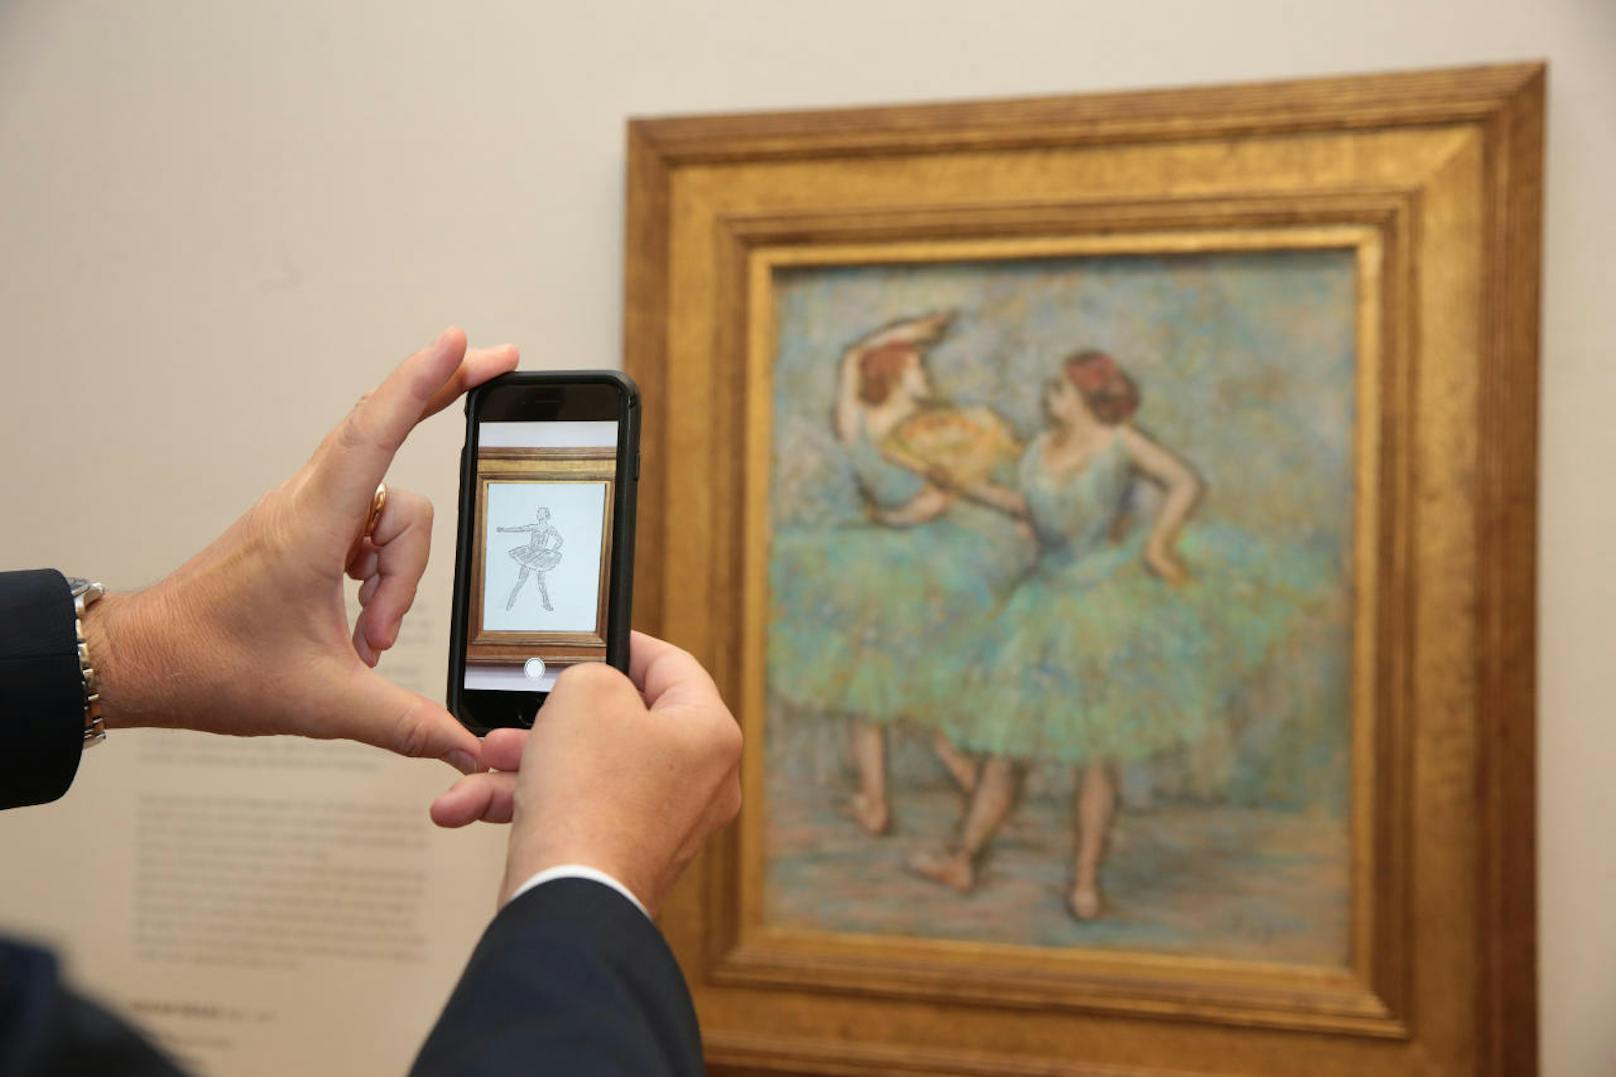 In der Albertina können erstmals in einem europäischen Museum ausgewählte Exponate mithilfe der kostenlosen App Artivive in einer neuen Dimension erlebt werden. Halten Besucher ihr Smartphone oder Tablet vor die Werke, werden die Bilder mittels Animationen oder Videos zum Leben erweckt.
Bild: "Zwei Tänzerinnen", Edgar Degas